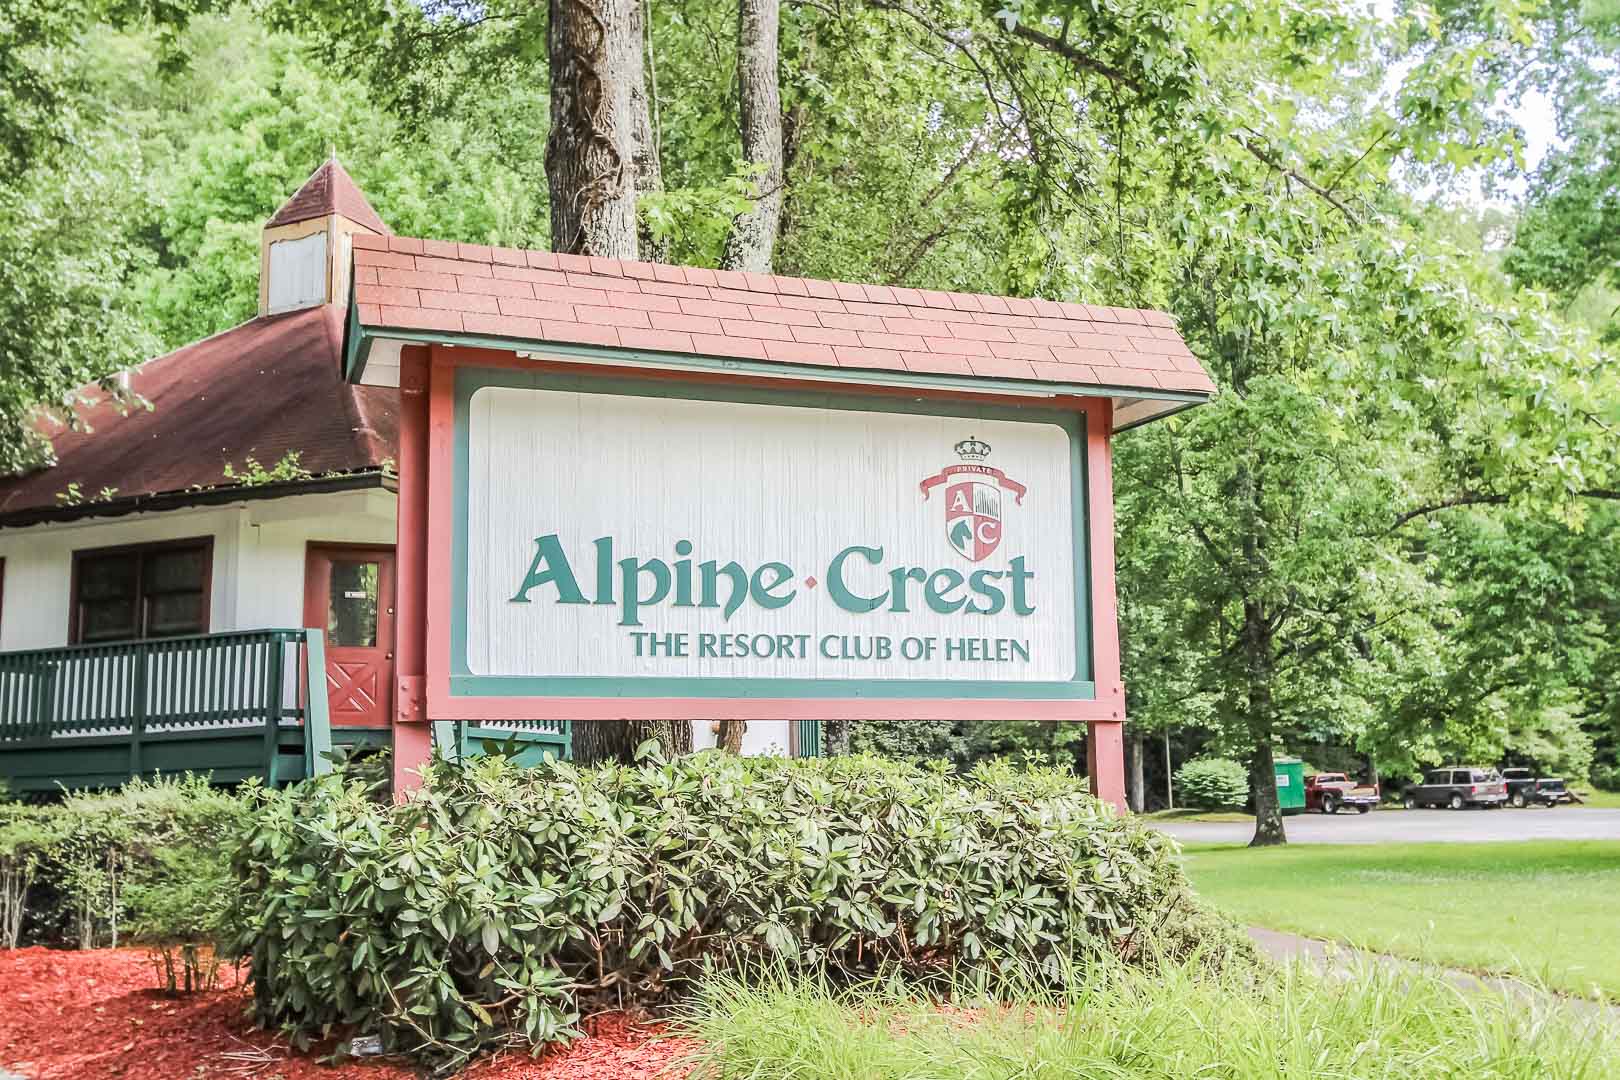 The resort signage at VRI's Alpine Crest Resort in Georgia.